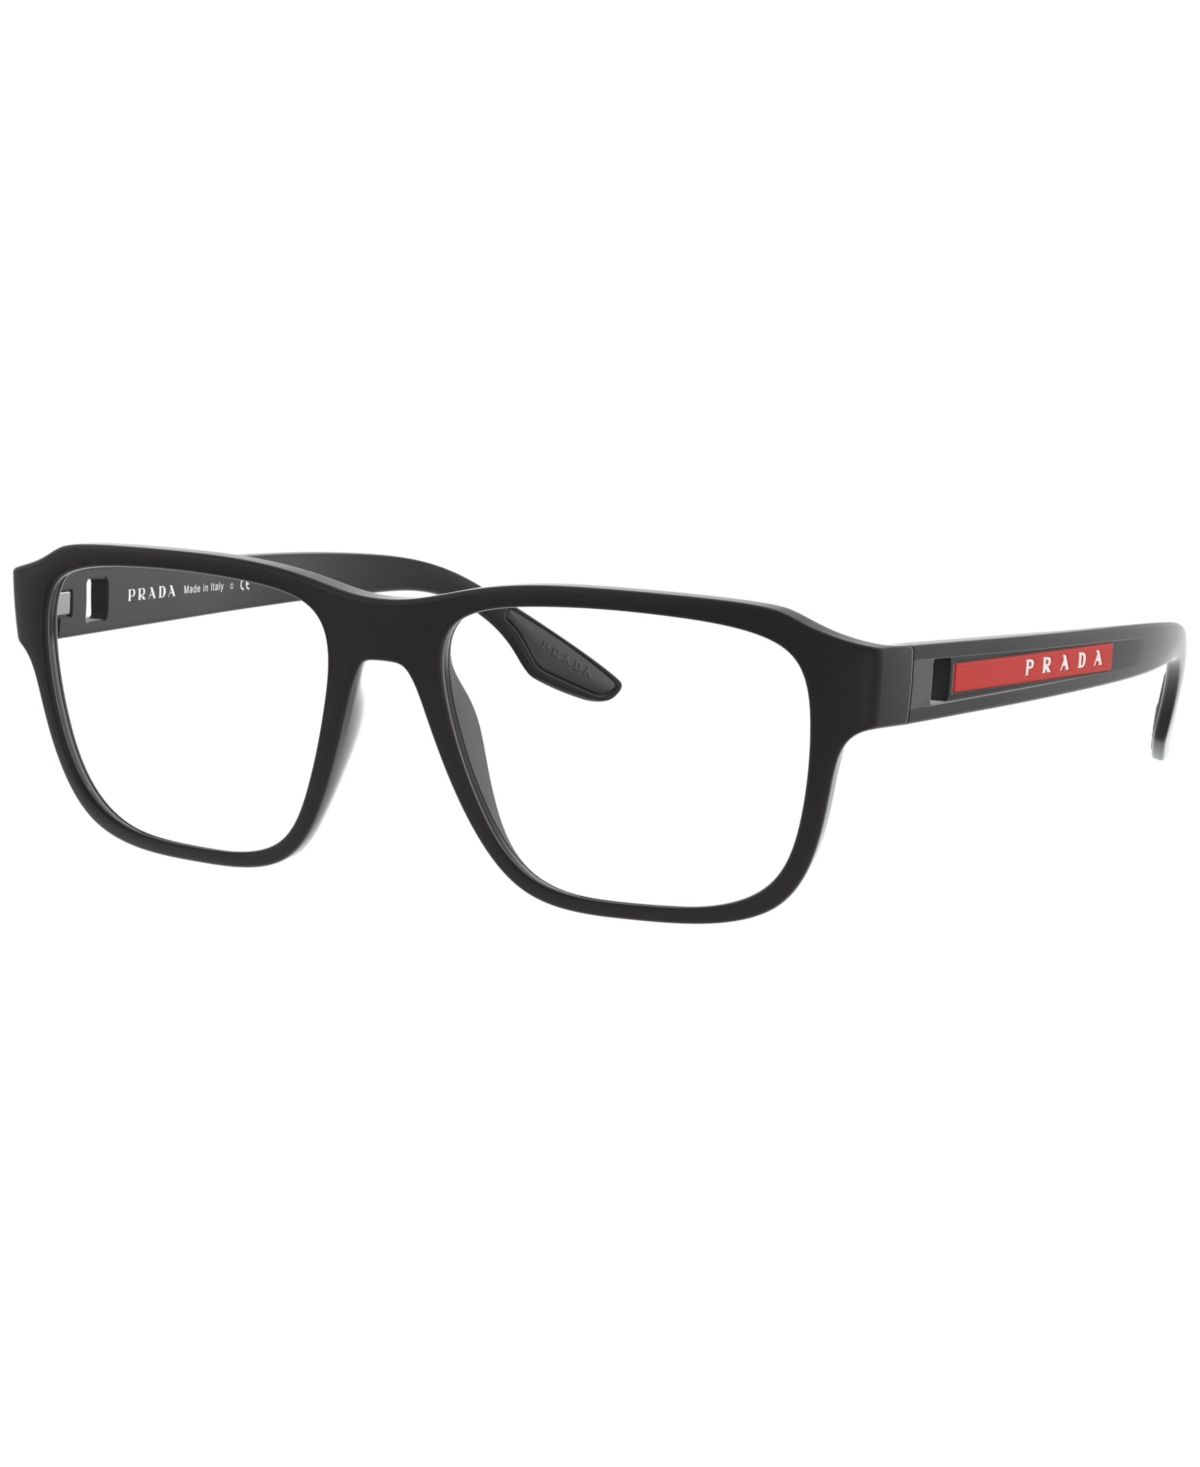 Men's Eyeglasses, Ps 04NV - Rubber Black